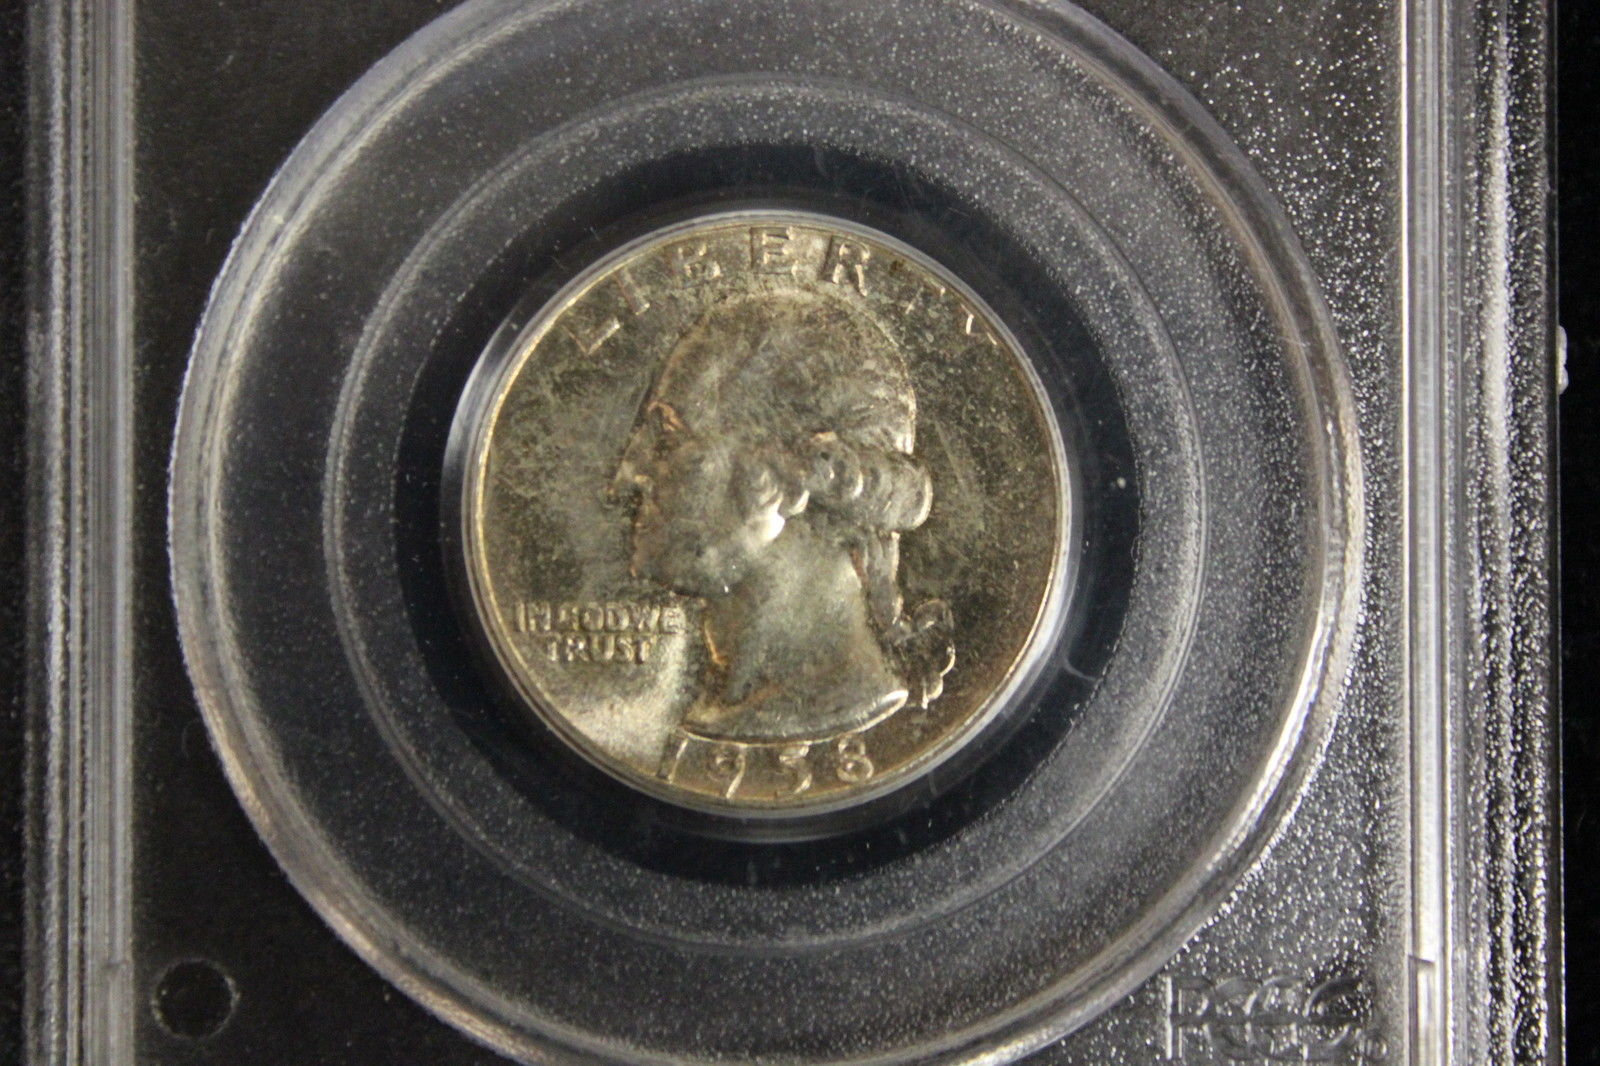 1958 25C Washington Quarter PCGS MS 66 toned obverse